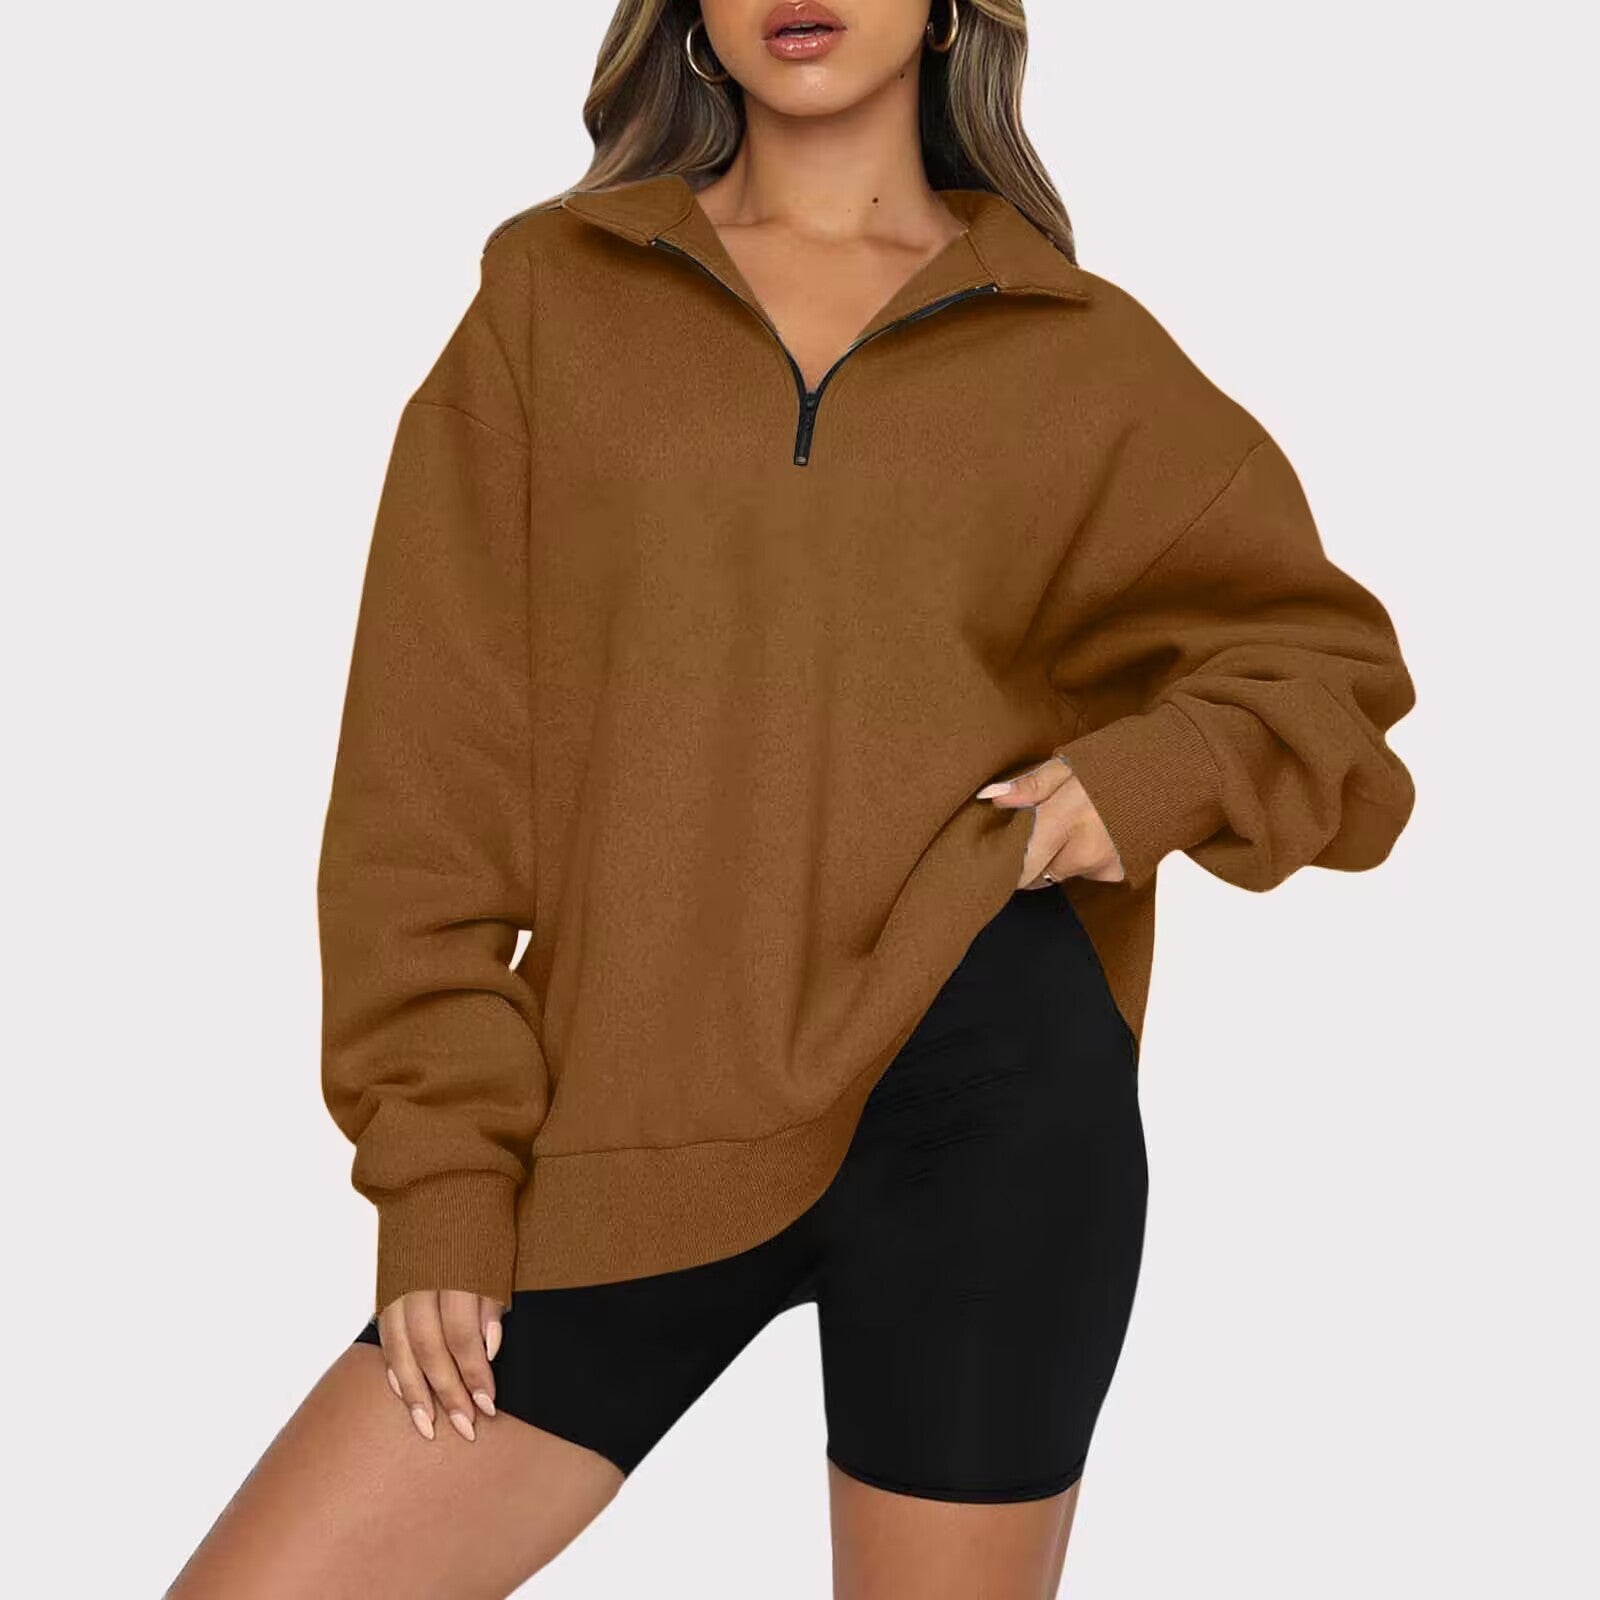 Women's Zip-up Sweatshirt